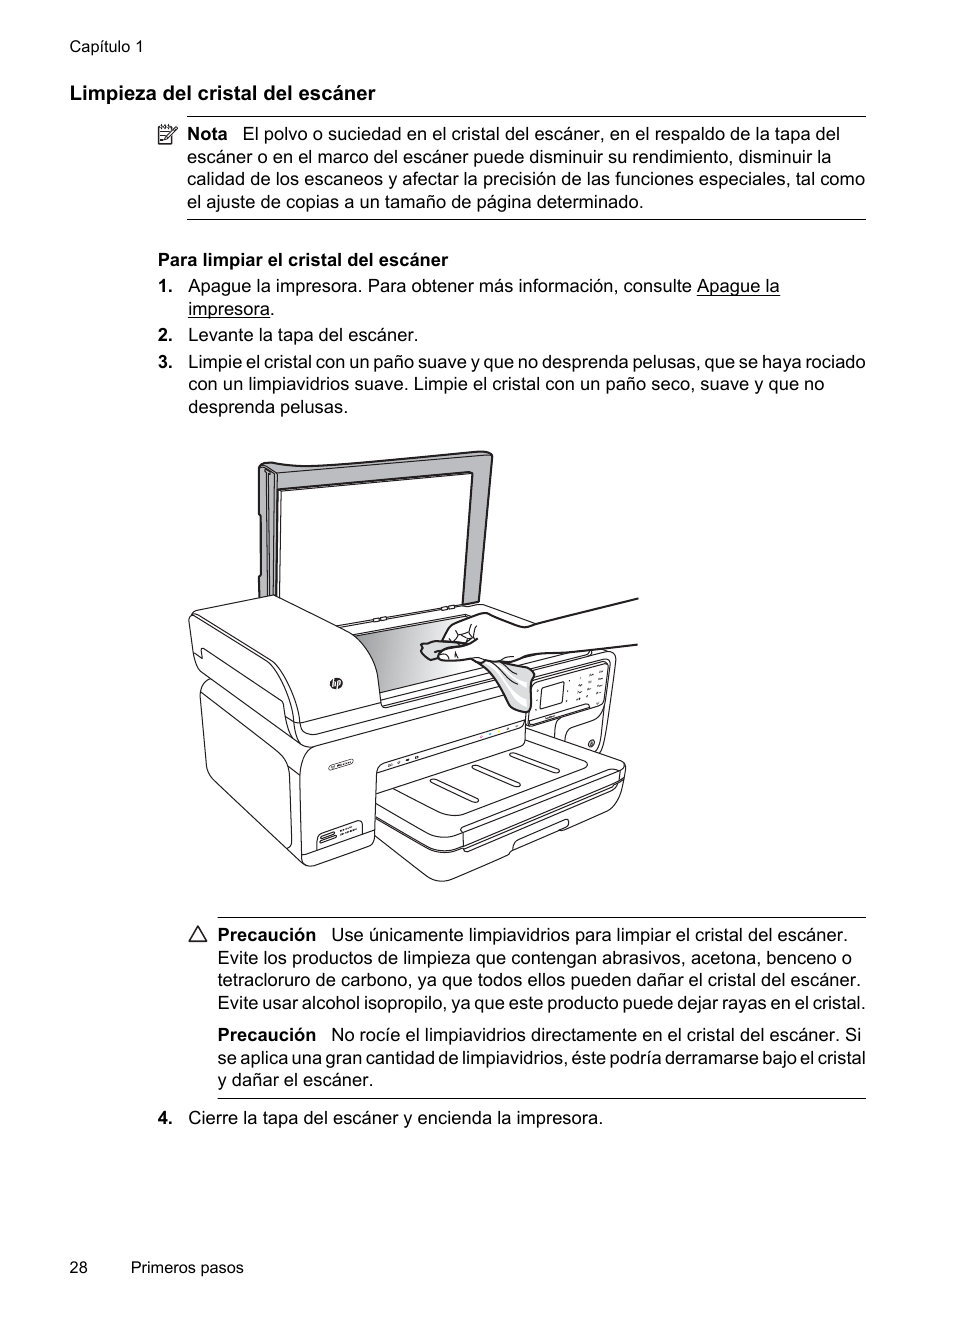 Peligro mental Restricción Limpieza del cristal del escáner | HP Impresora e-Todo-en-Uno de formato  ancho HP Officejet 7500A - E910a Manual del usuario | Página 32 / 268 |  Original